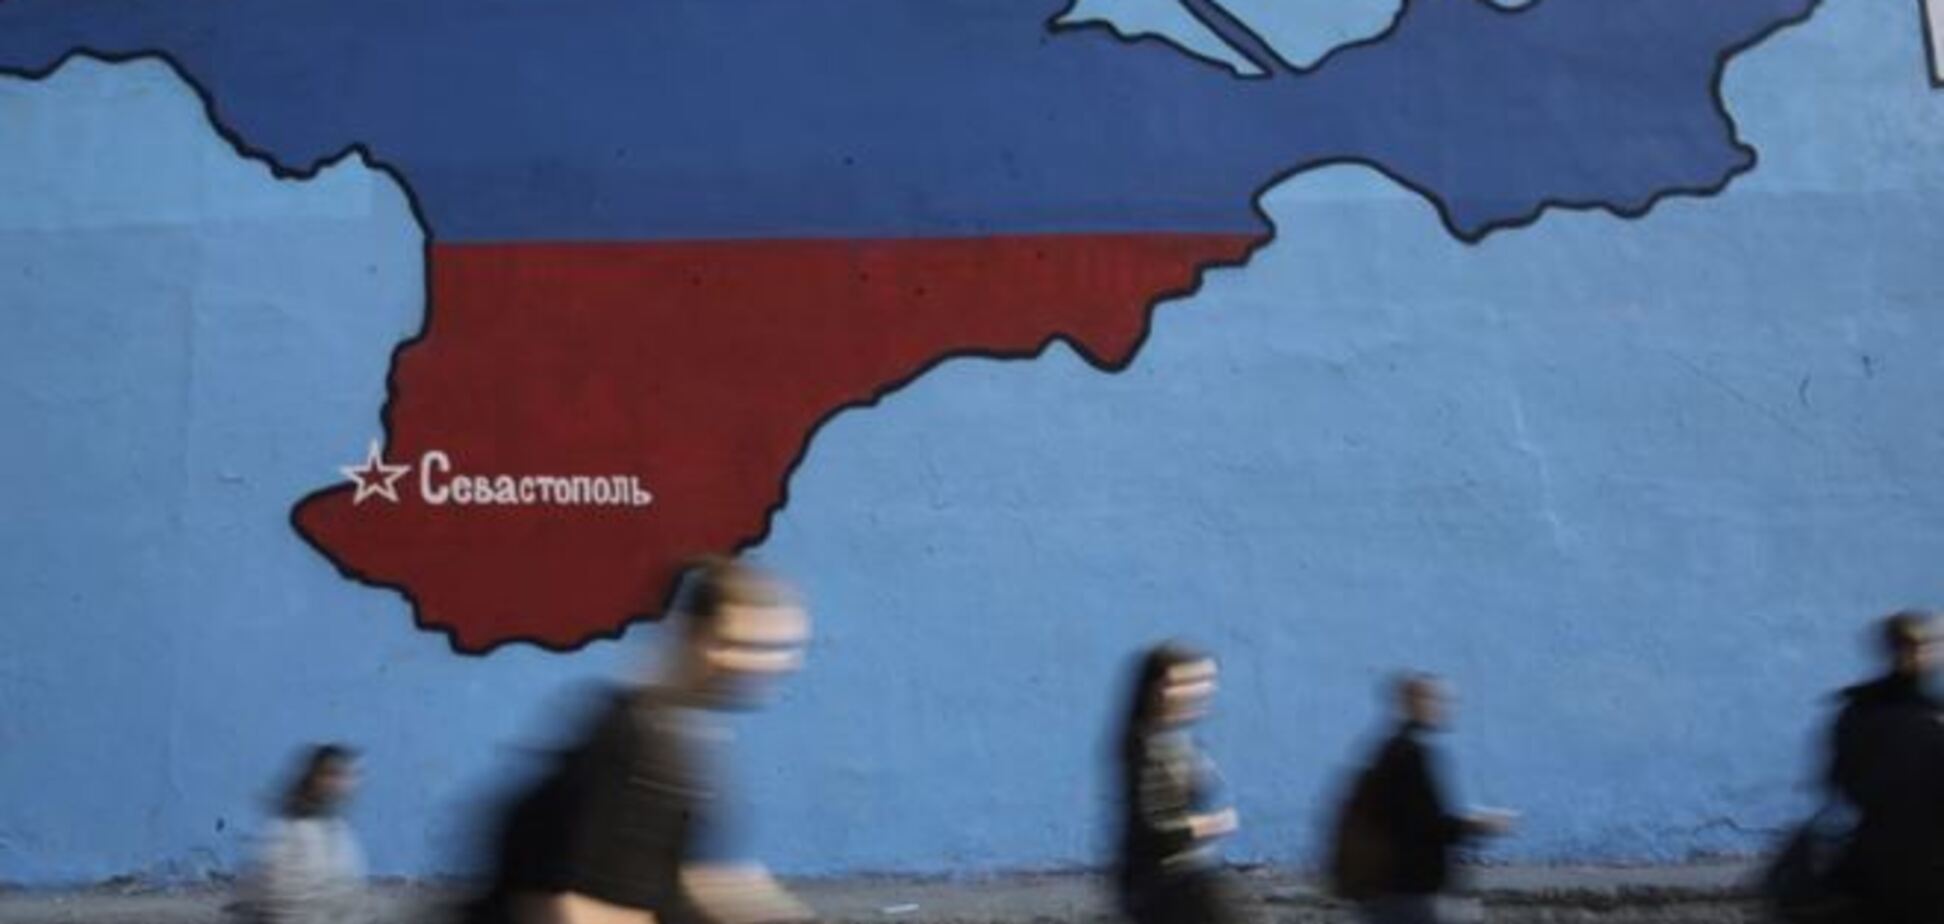 Аннексия Крыма больно ударила по России, перспектива гибельна - Немцов